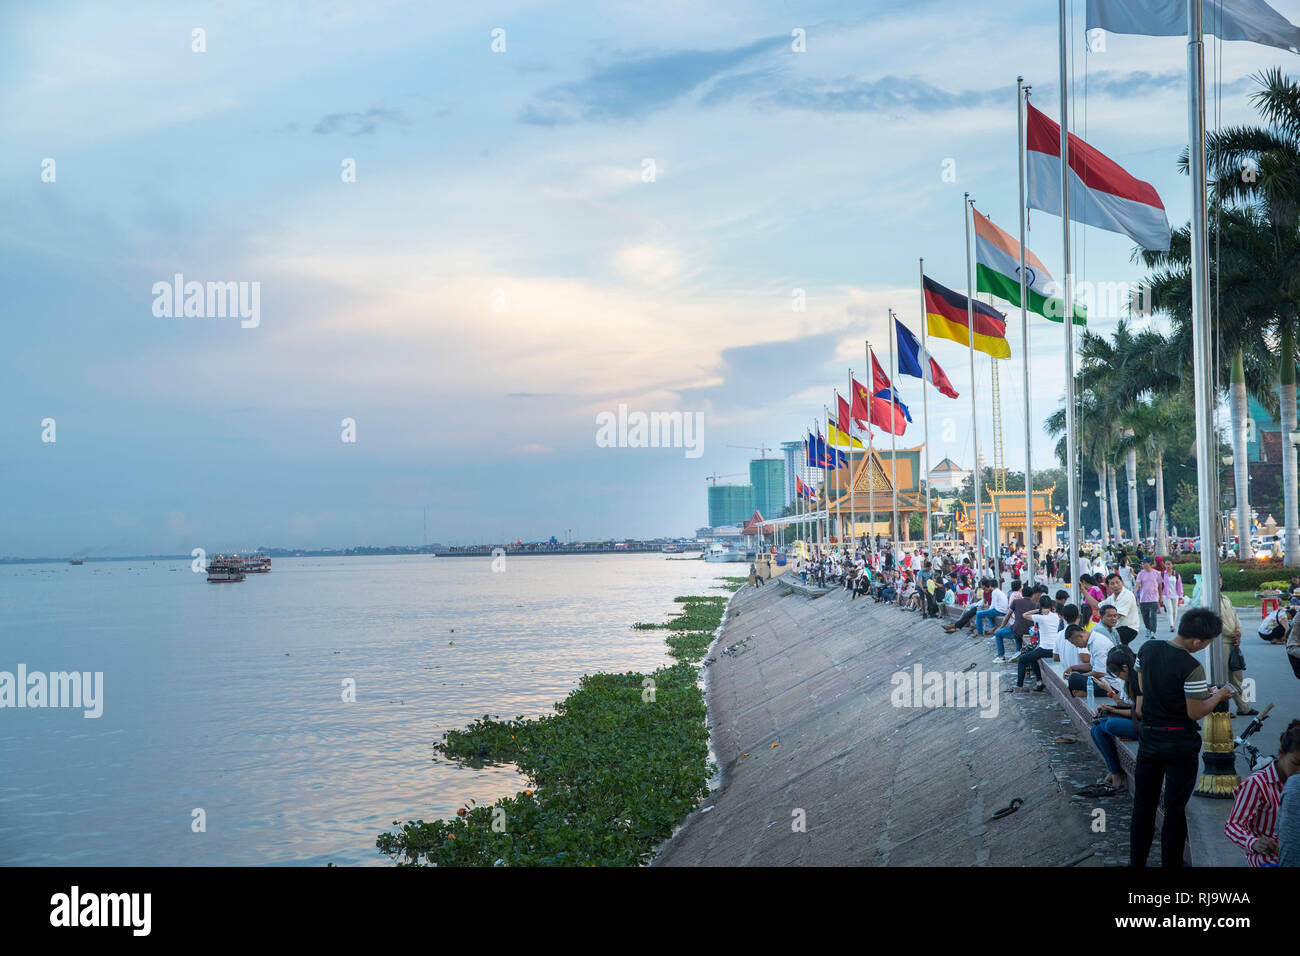 Kambodscha, Phnom Penh, Uferpromenade des Mekong, Einheimische spazieren und amüsieren sich Stock Photo